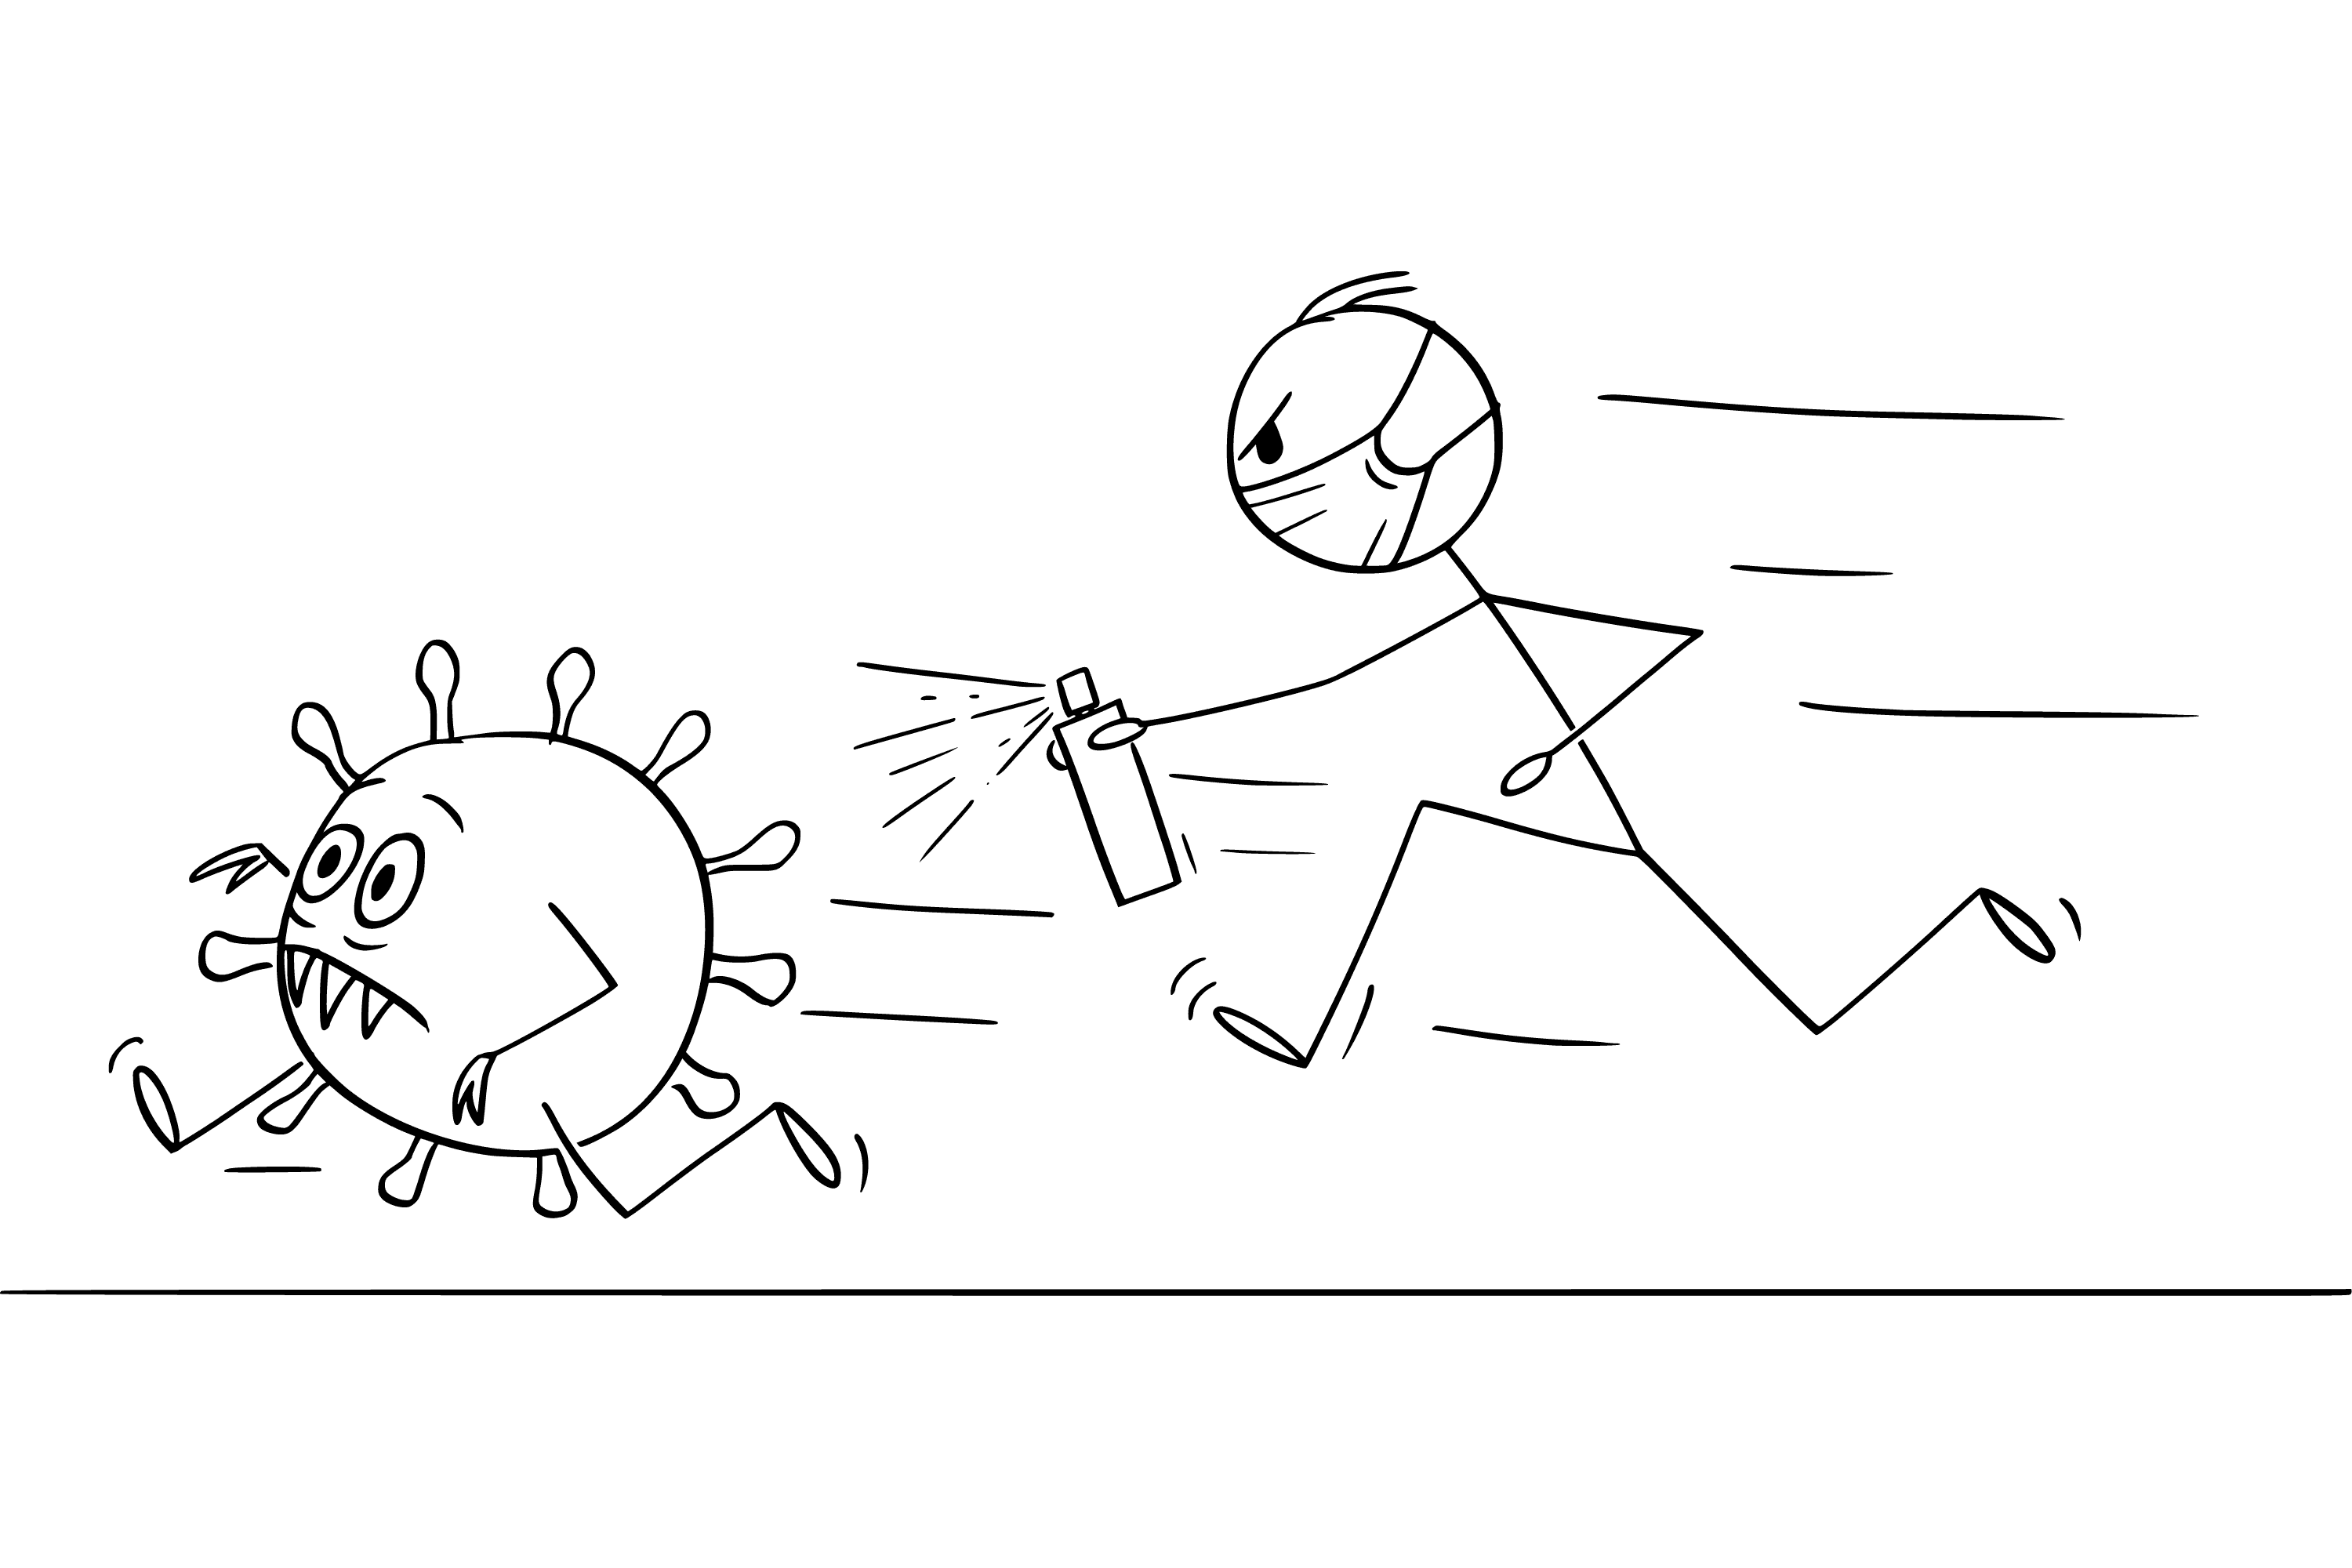 Strichmännchen jagt laufenden COVID-19-Virus mit Desinfektionsspray. Vektor-Cartoon-Zeichnung.